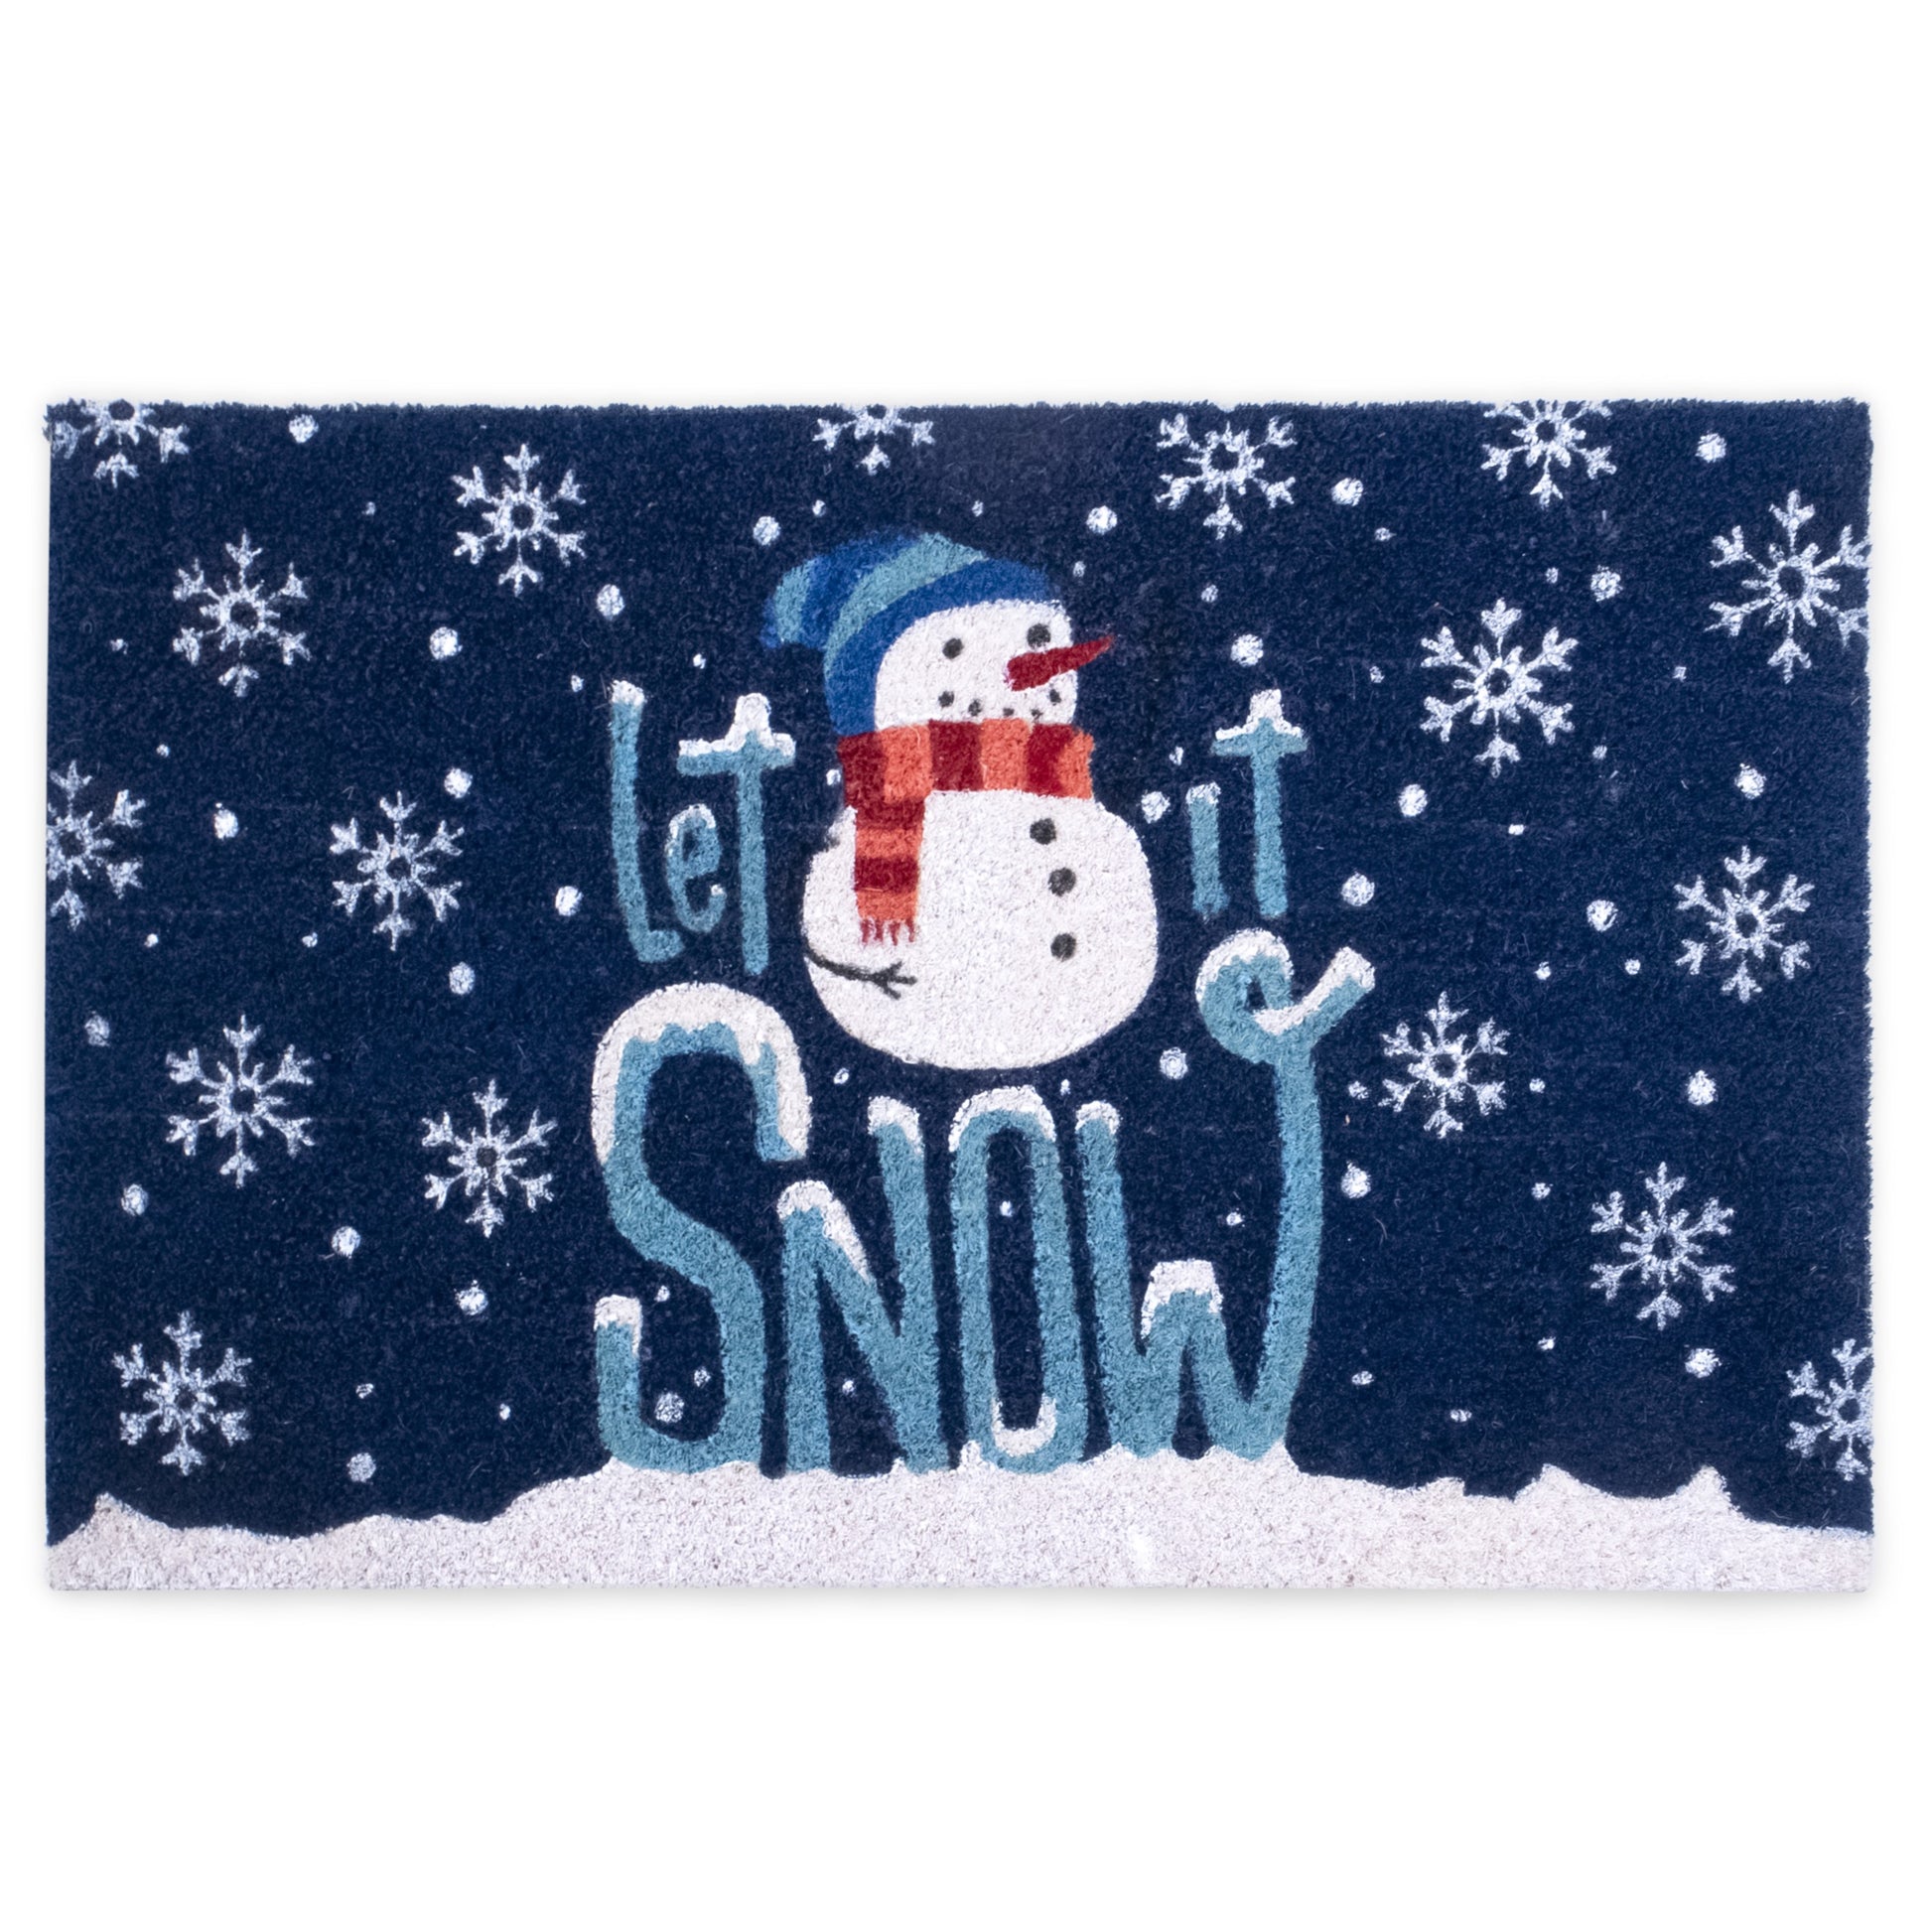 Let It Snow Door Mat - 18 x 30, Blue, White, Snowflakes, Indoor